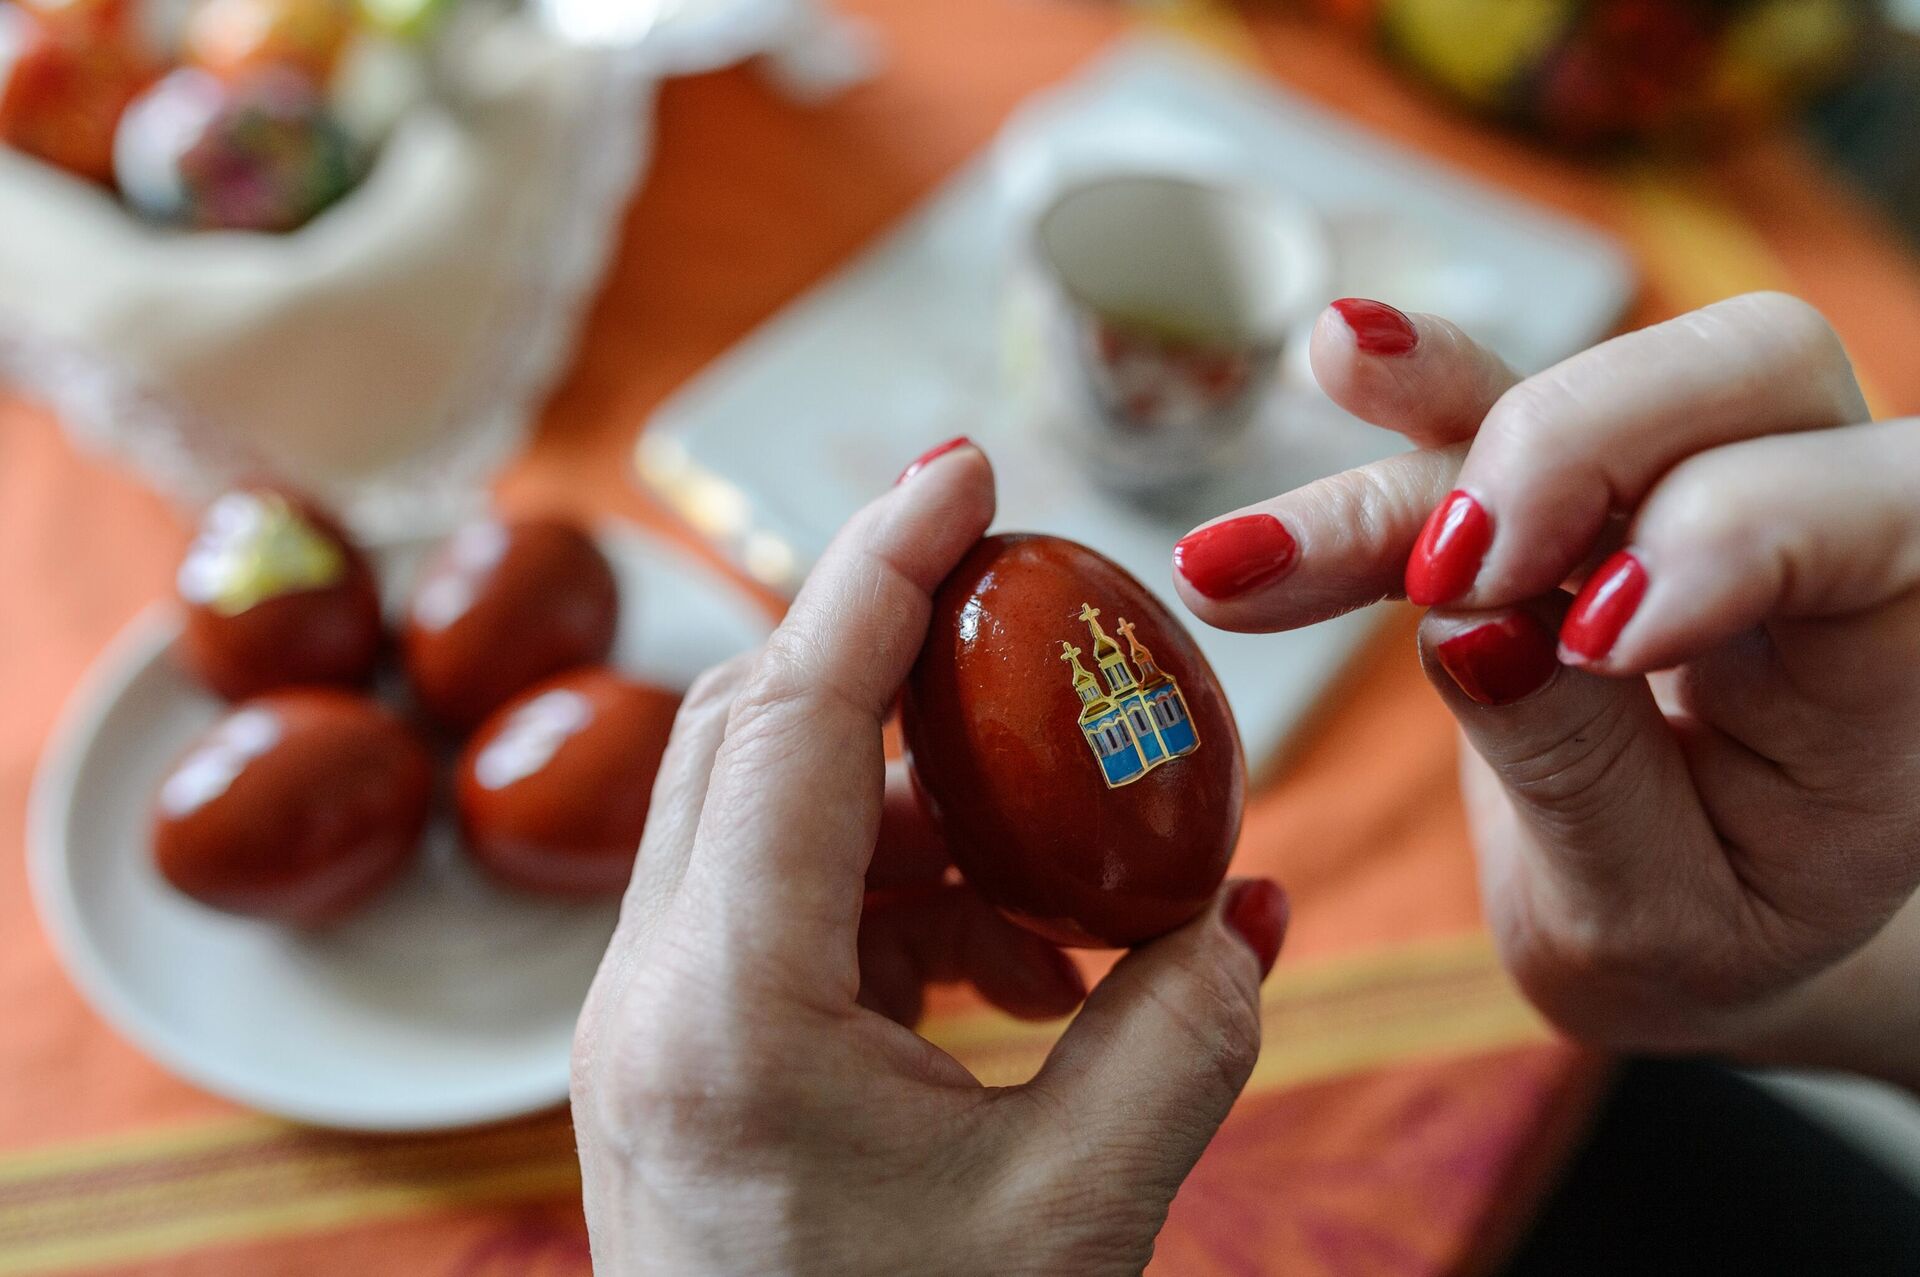 Перья, золото, крупа. 10 необычных способов декора пасхальных яиц